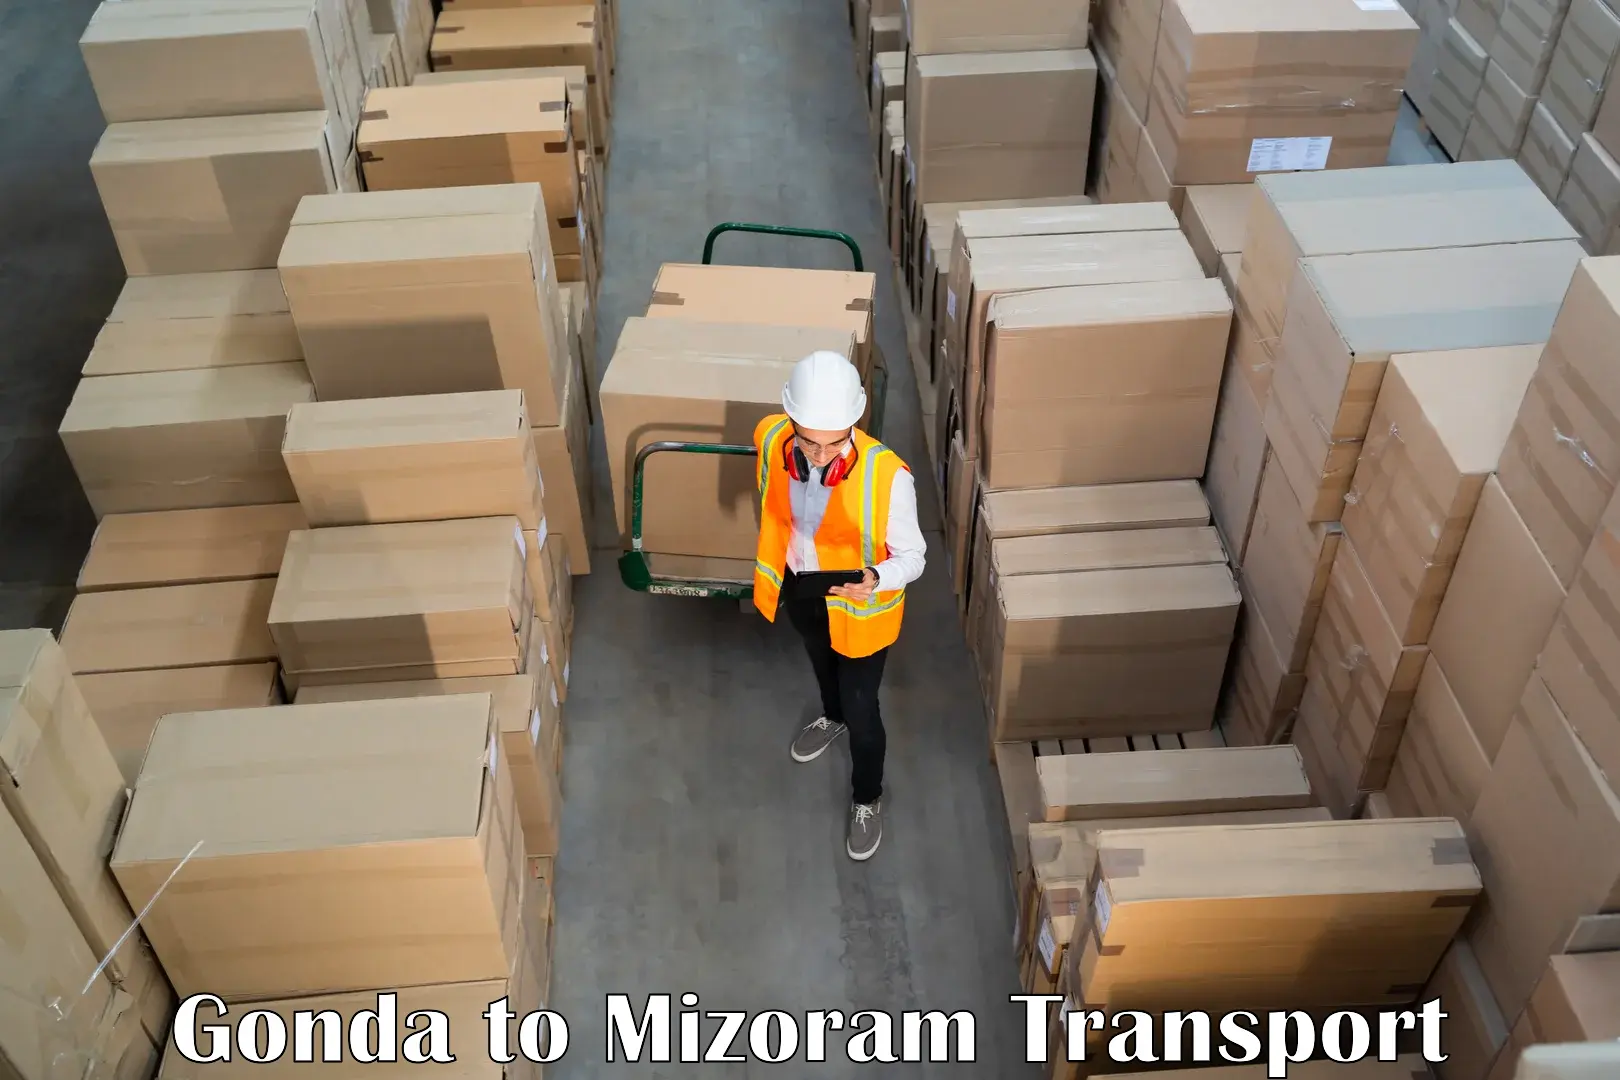 Container transport service Gonda to Mizoram